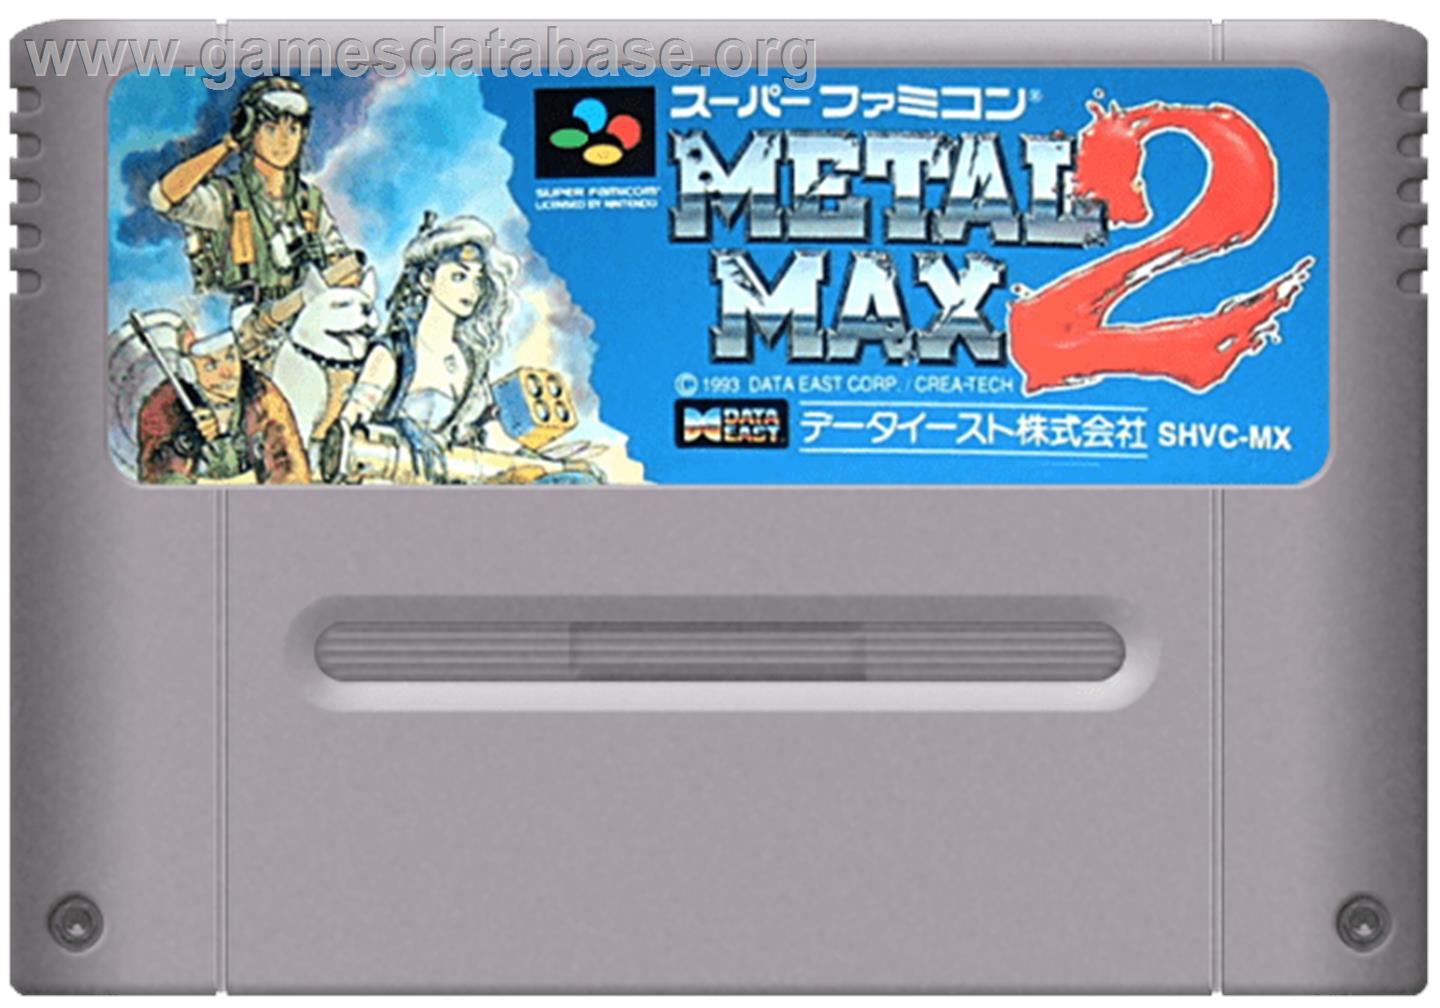 Metal Max 2 - Nintendo SNES - Artwork - Cartridge